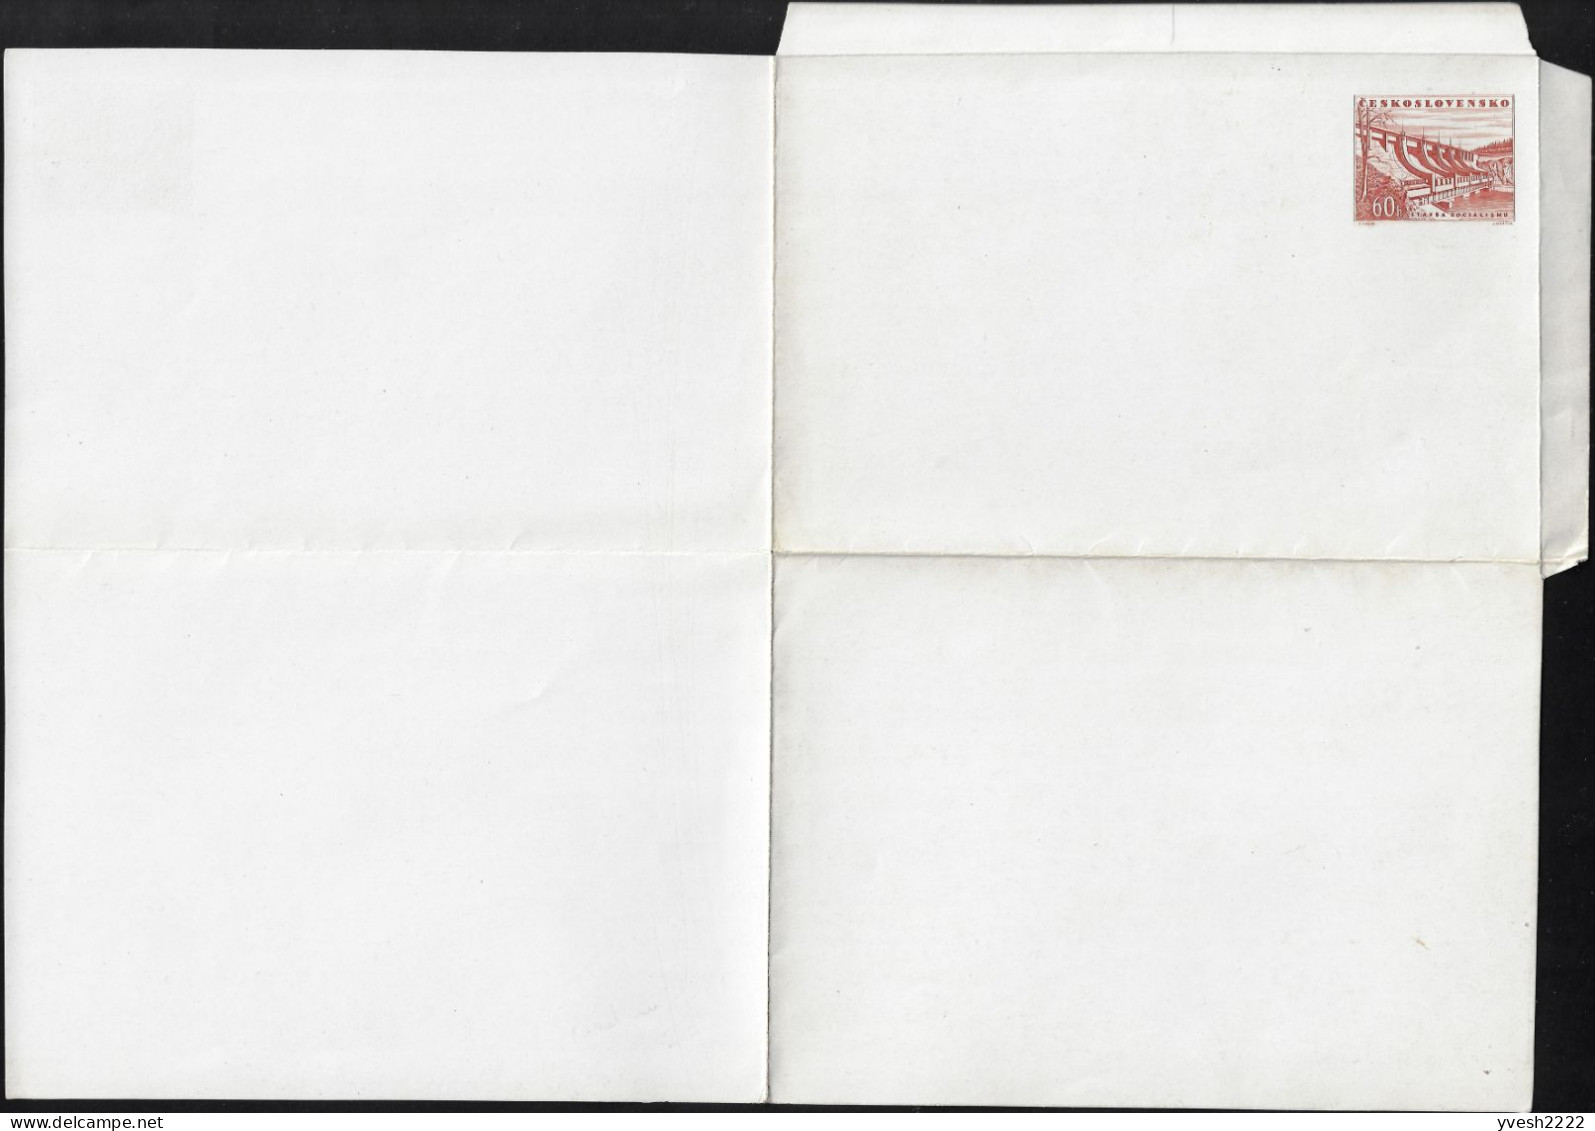 Tchécoslovaquie 1953 Michel F1b ??? Carte-lettre Sans La Moindre Inscription, Papier Craie. Barrage Communiste - Eau